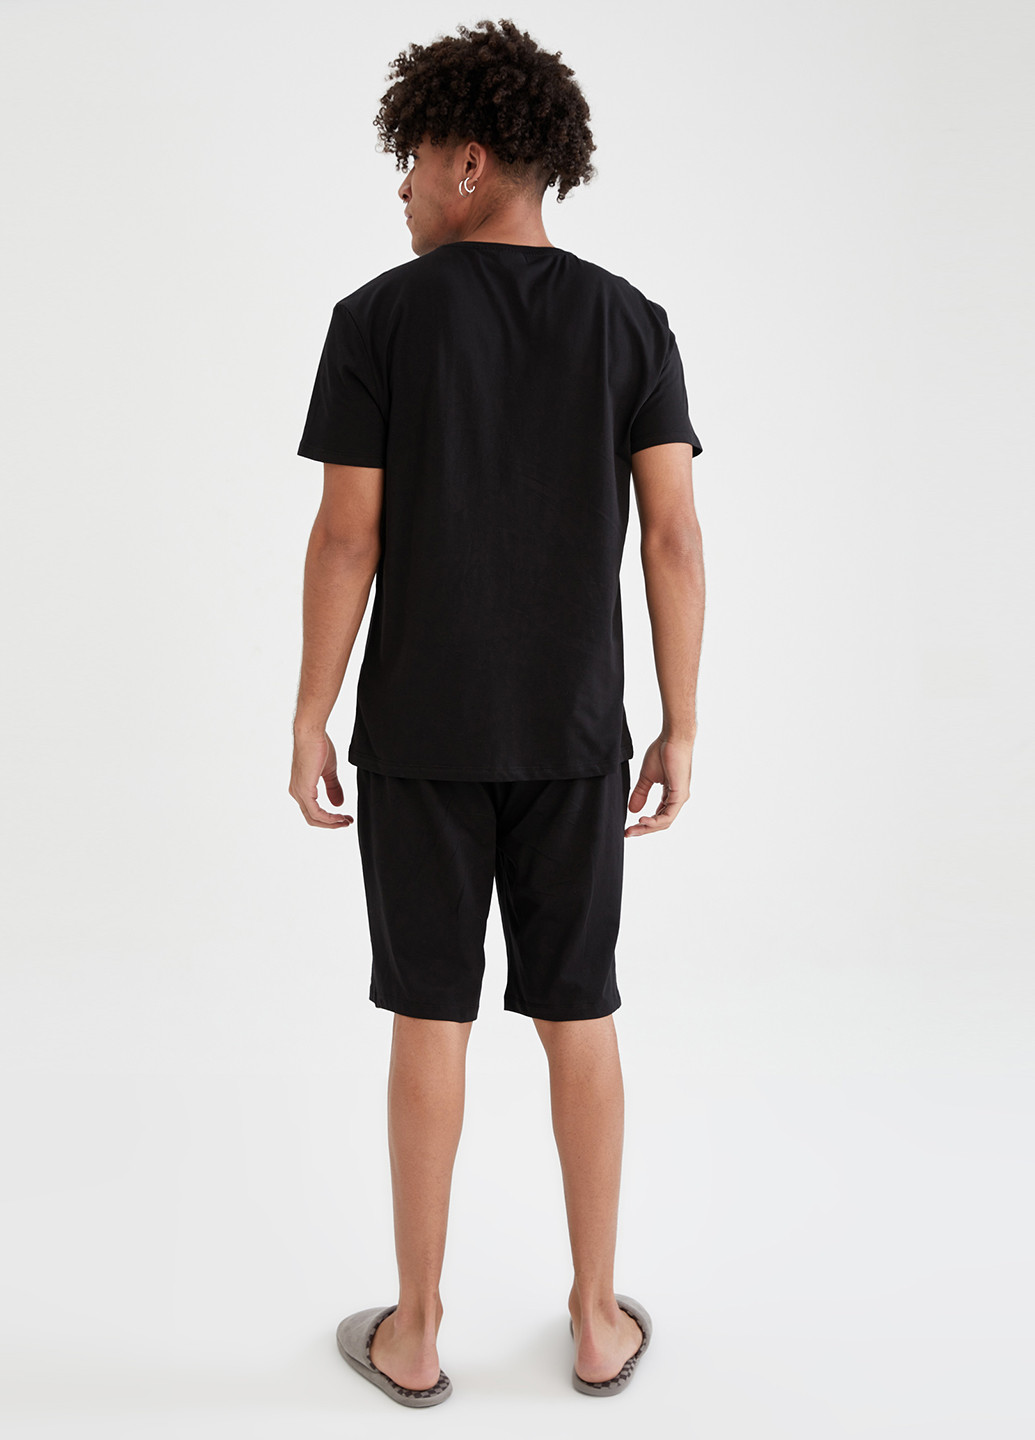 Черный демисезонный tom & jerry DeFacto Комплект(футболка, шорты)